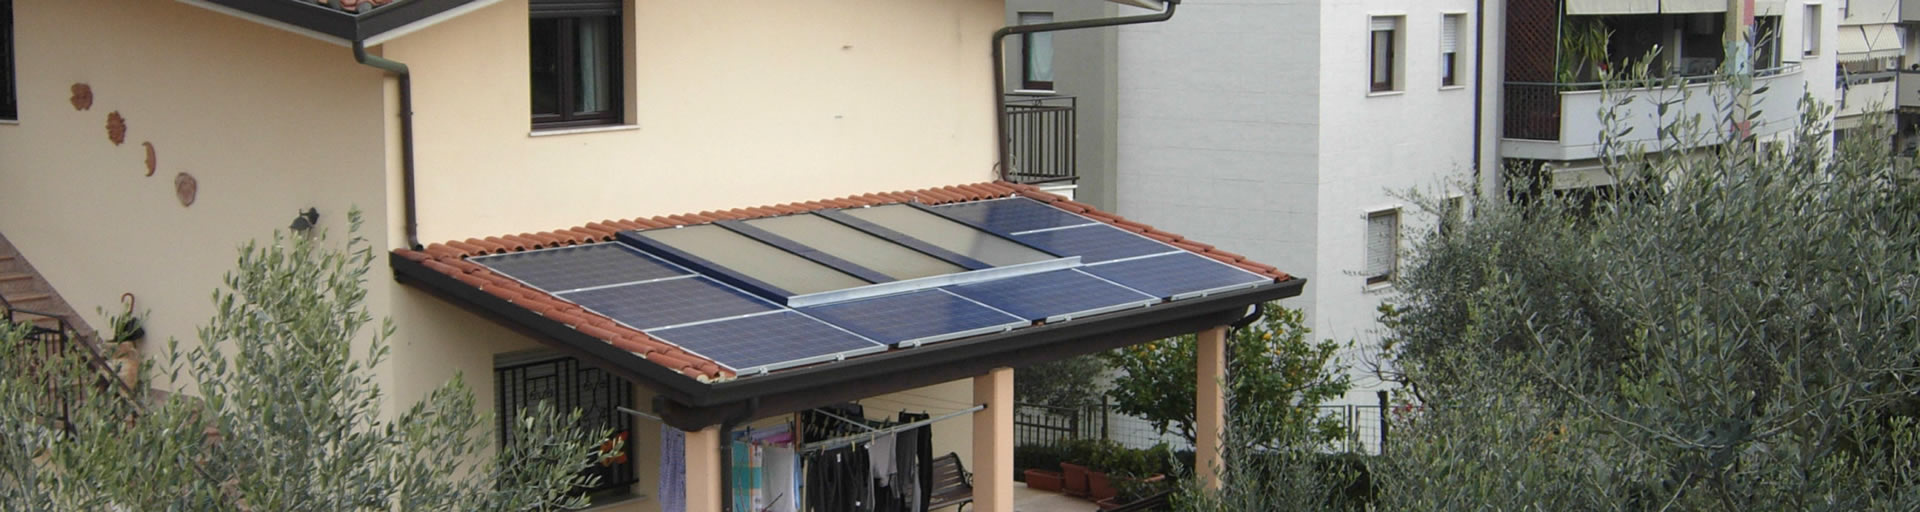 Impianto integrato di solare termico e fotovoltaico